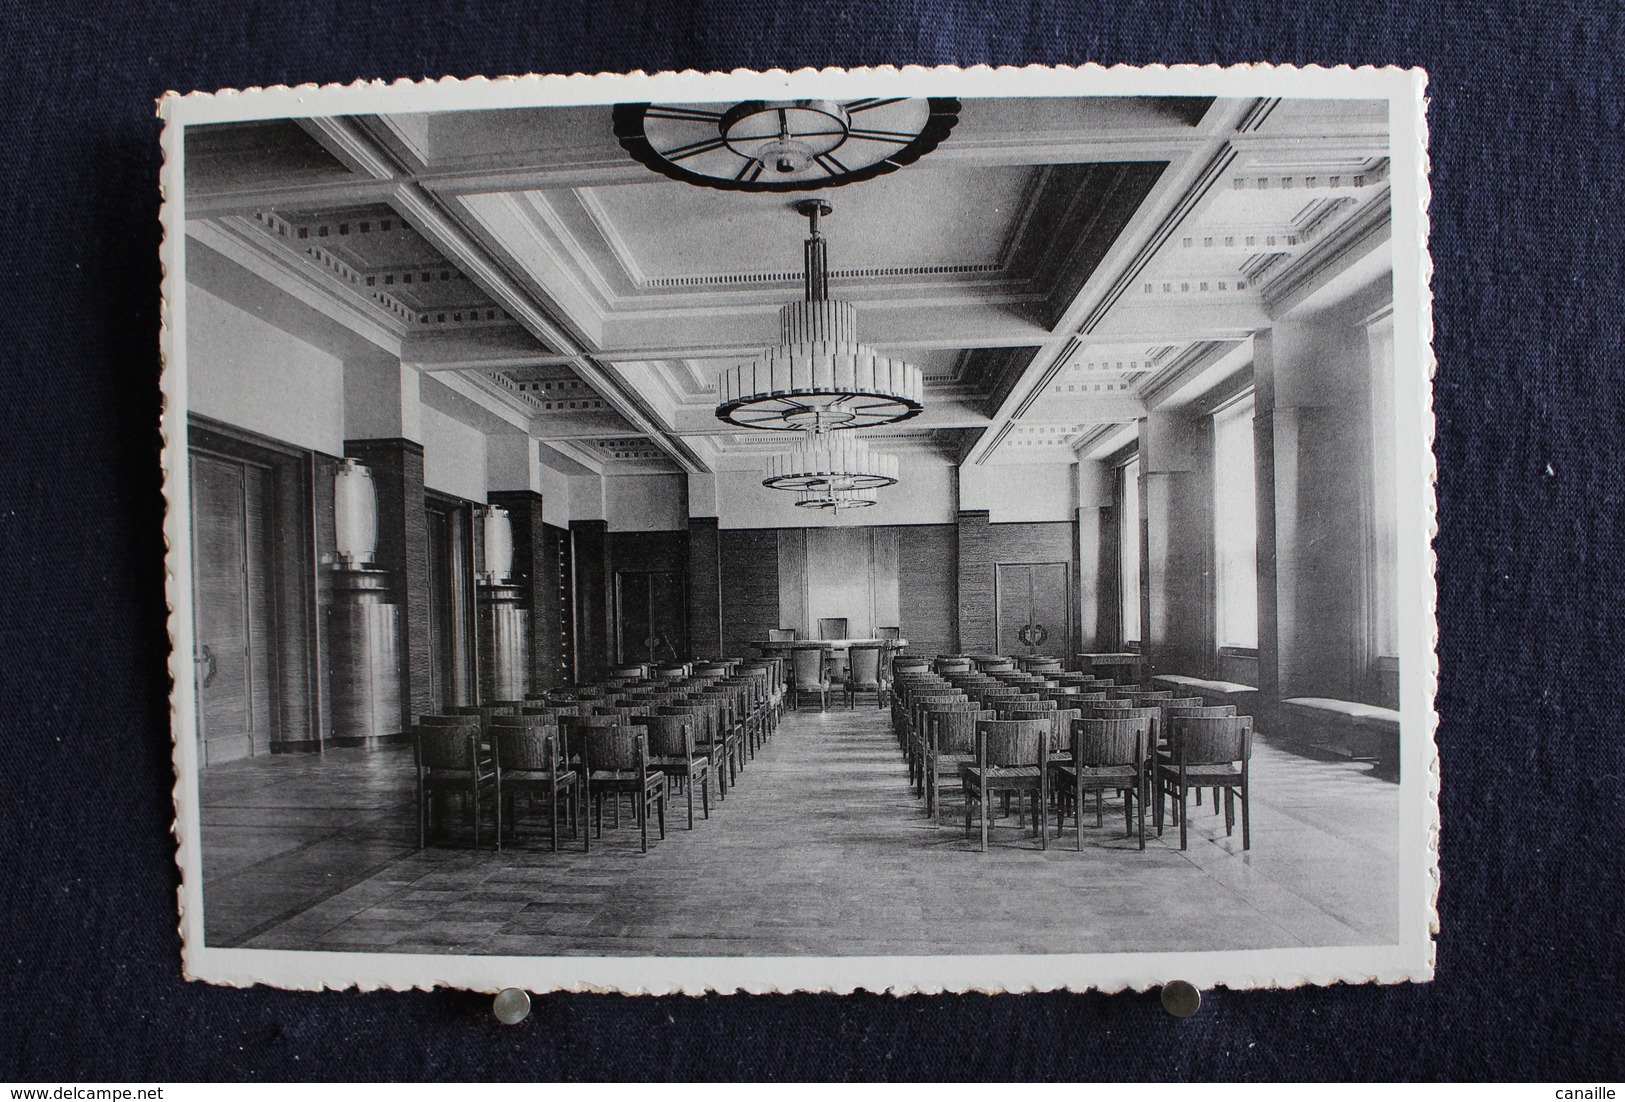 i-112 / 10 cartes-vues  (grand format) - Bruxelles  Commune  Forest, Inauguration de l'Hôtel Communal le 9 juillet 1938